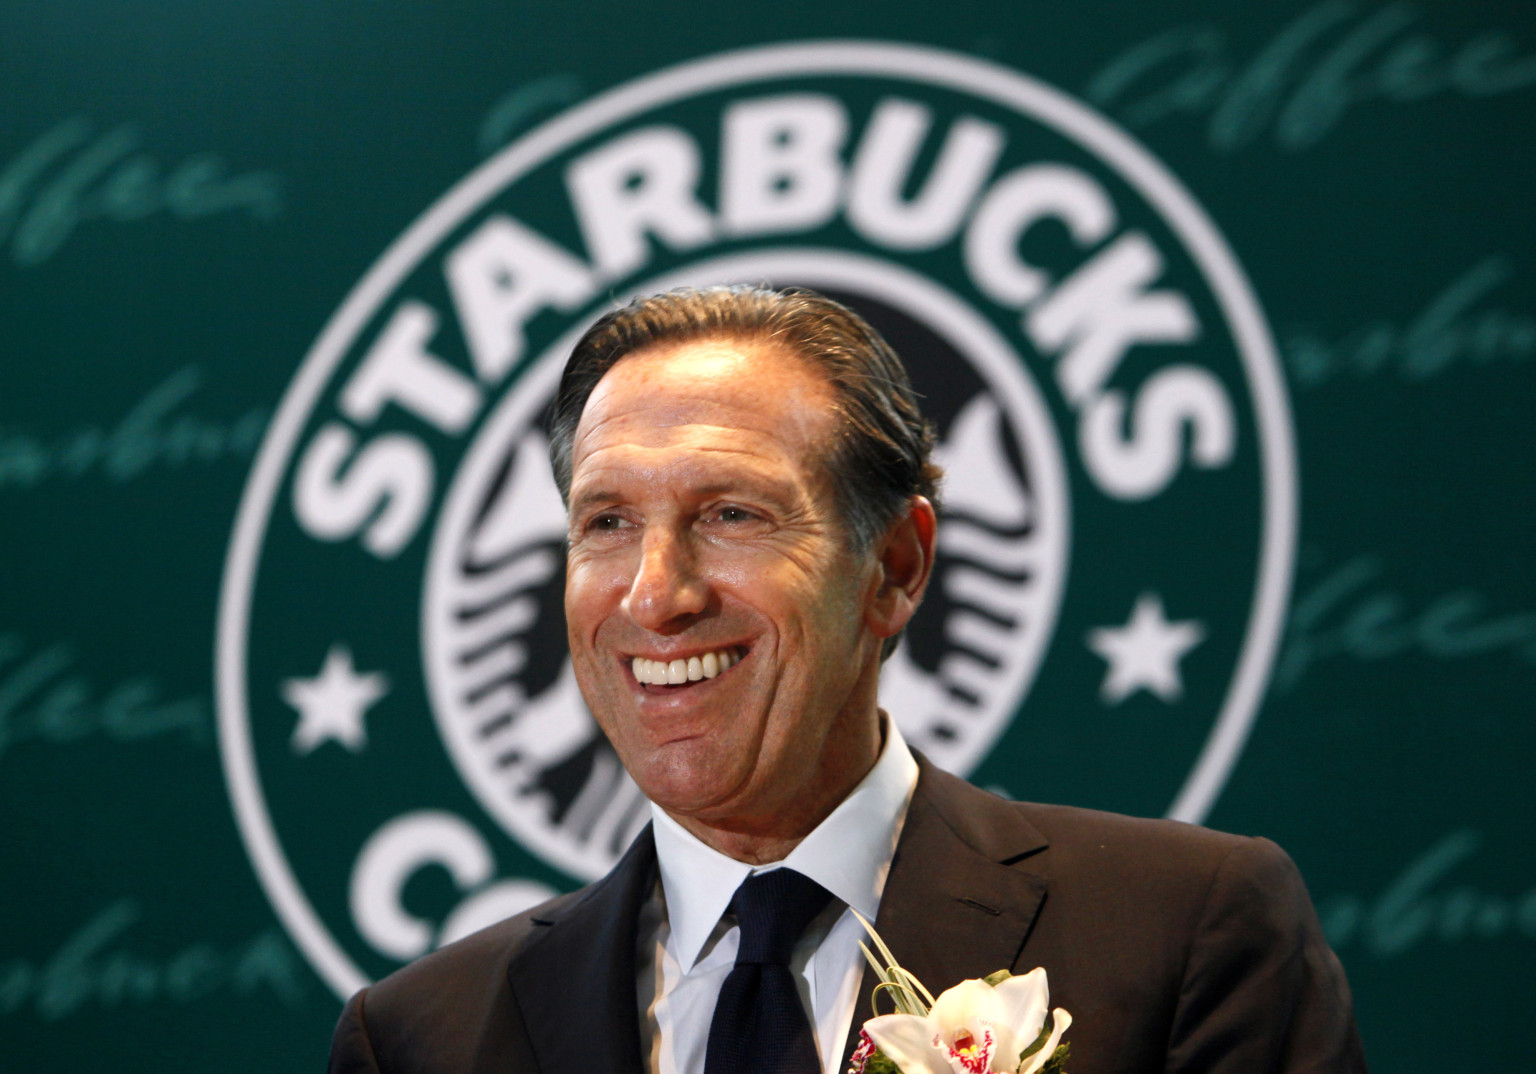 Lớn lên trong khu nhà nghèo, Howard Schultz vẫn nỗ lực để đạt học bổng bóng đá của đại học Northern Michigan (Mỹ) và sau khi tốt nghiệp thì đến làm việc tại Xerox. Không lâu sau, ông đảm nhiệm việc vận hành một nhãn hiệu cà phê mang tên Starbucks, khi đó mới chỉ có 60 cửa hàng. Schultz  trở thành CEO của công ty vào năm 1987 và phát triển thương hiệu cà phê này với 16.000 tiệm cà phê trên toàn thế giới hiện nay.